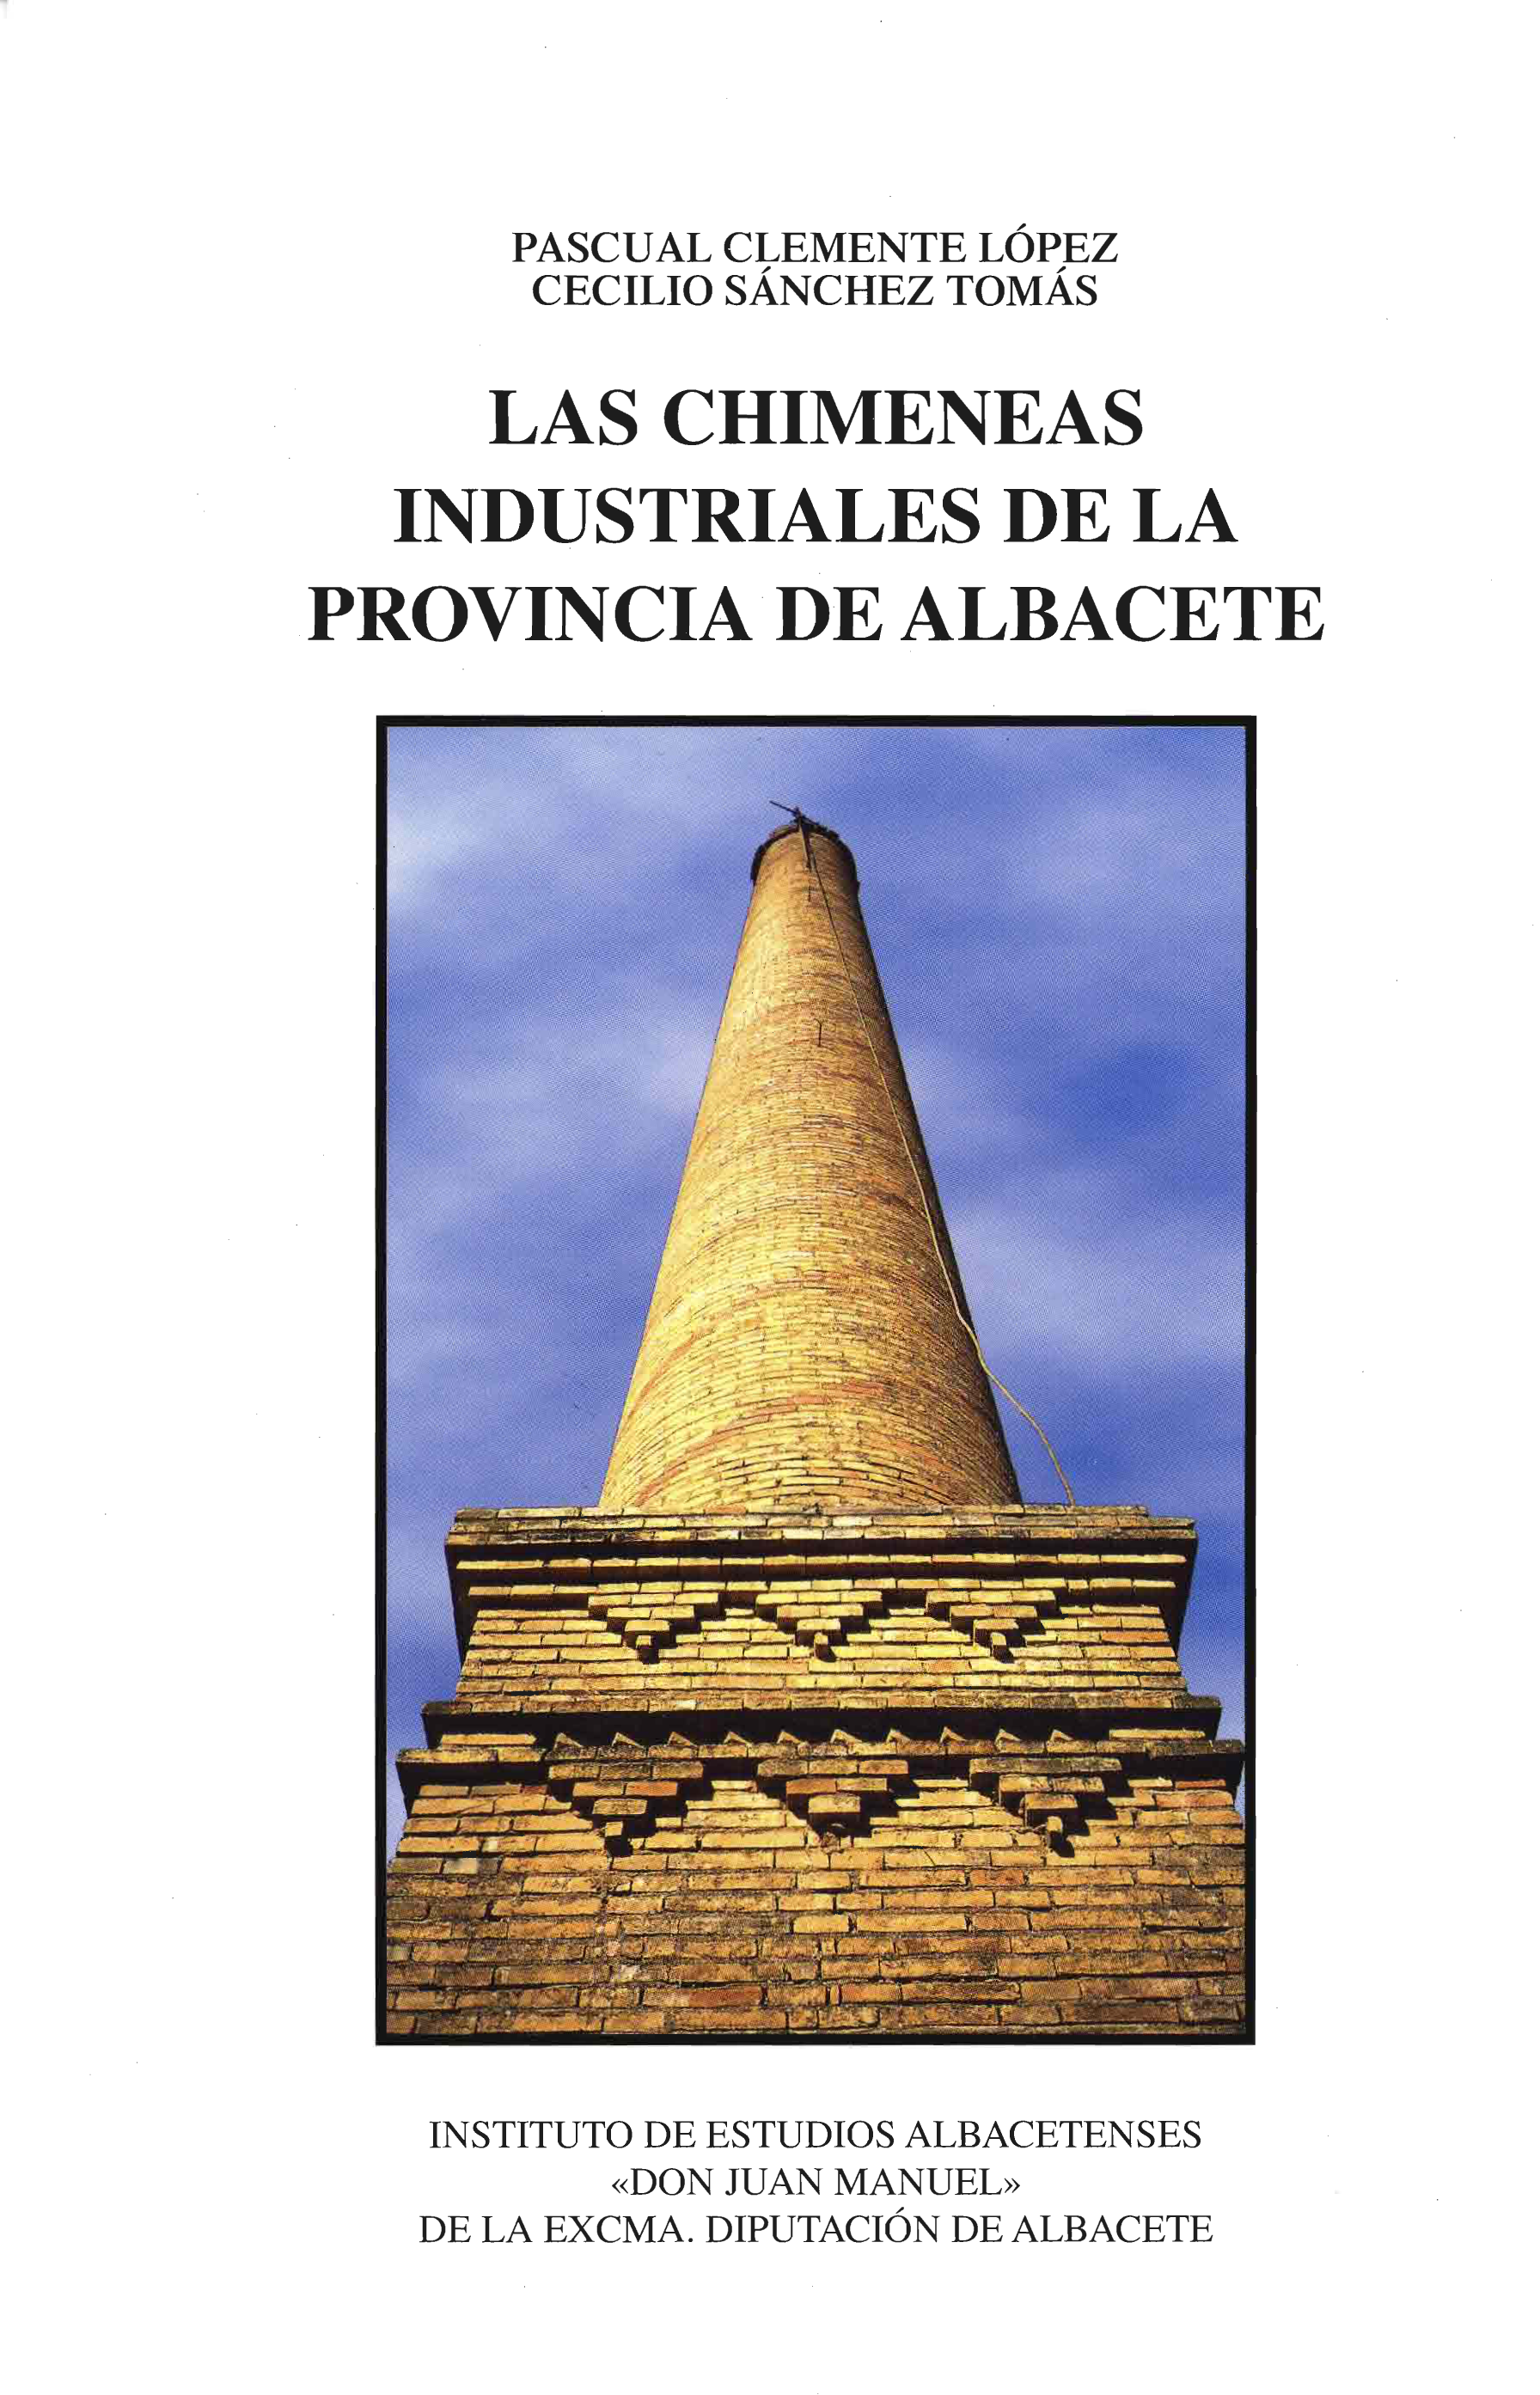 Imagen de portada del libro Las chimeneas industriales de la provincia de Albacete